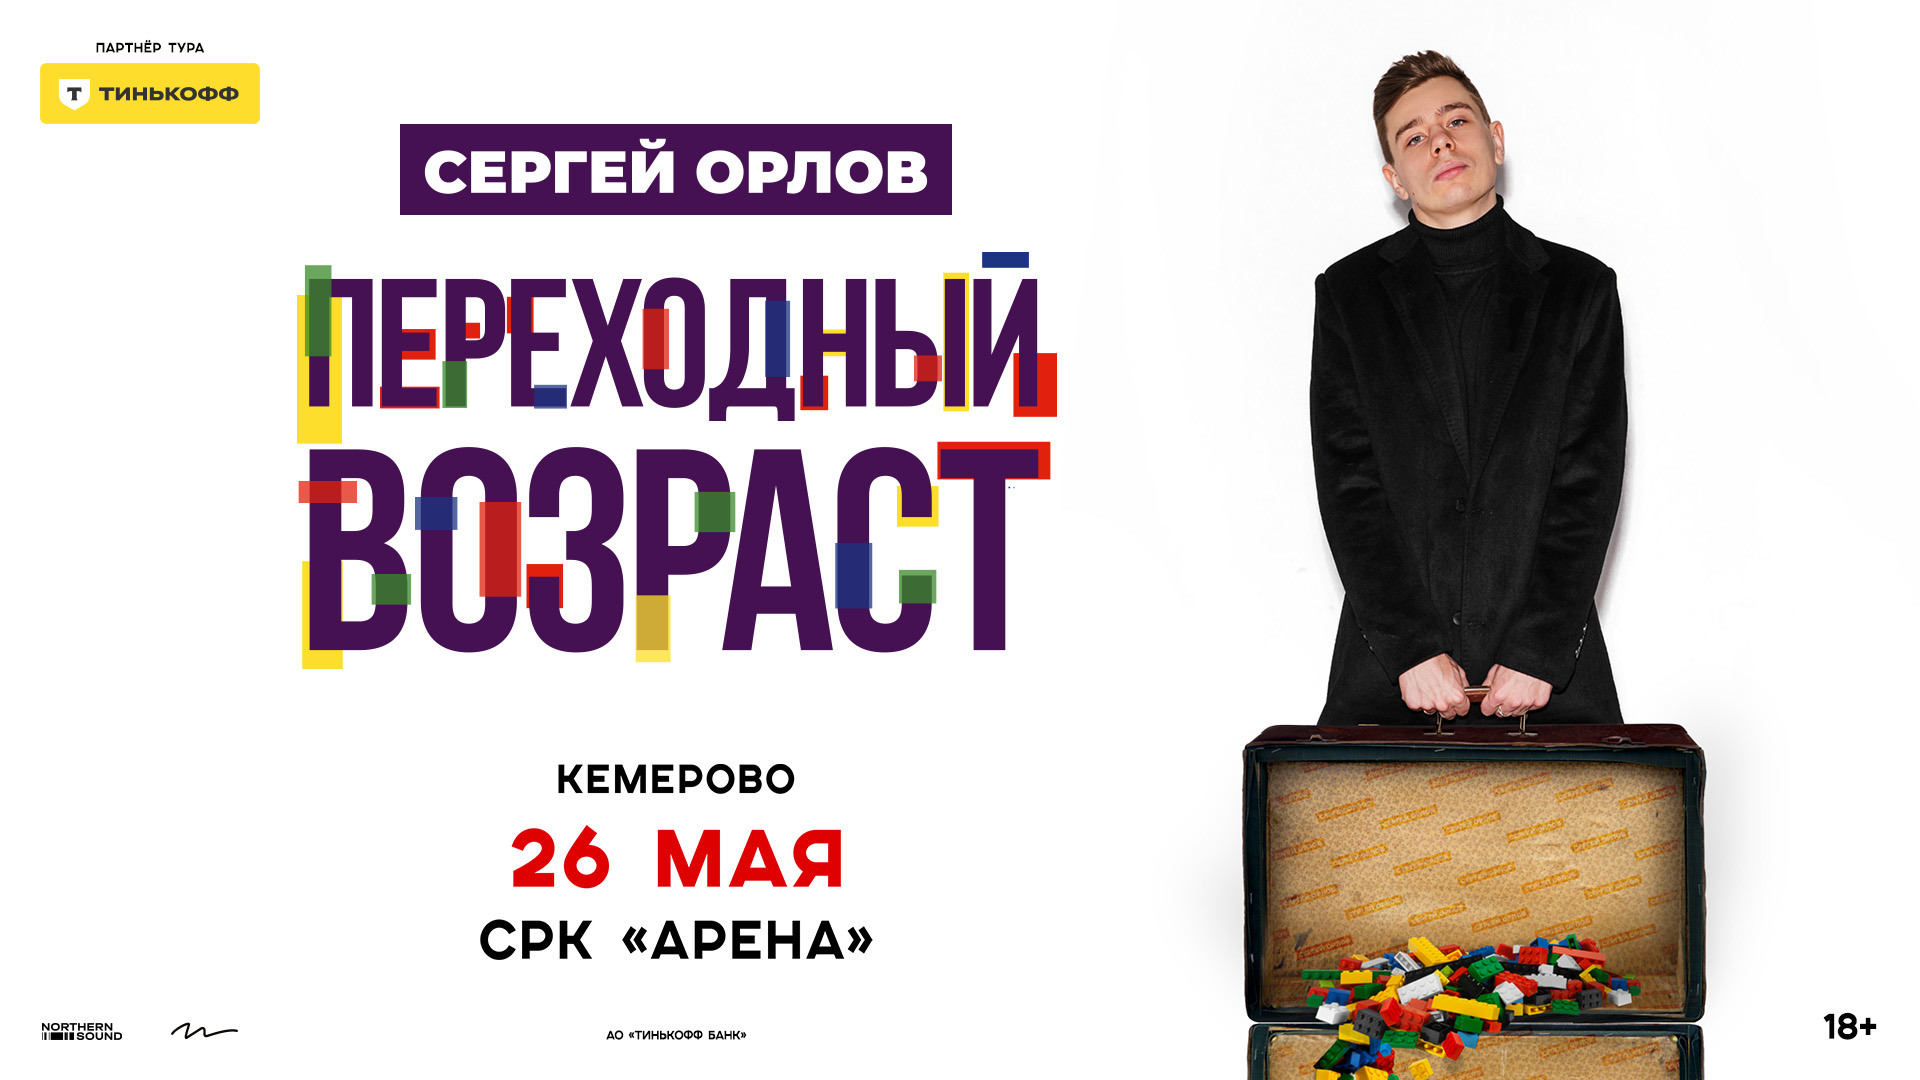 Популярный стендап-комик Сергей Орлов выступит в Кемерове с новой программой